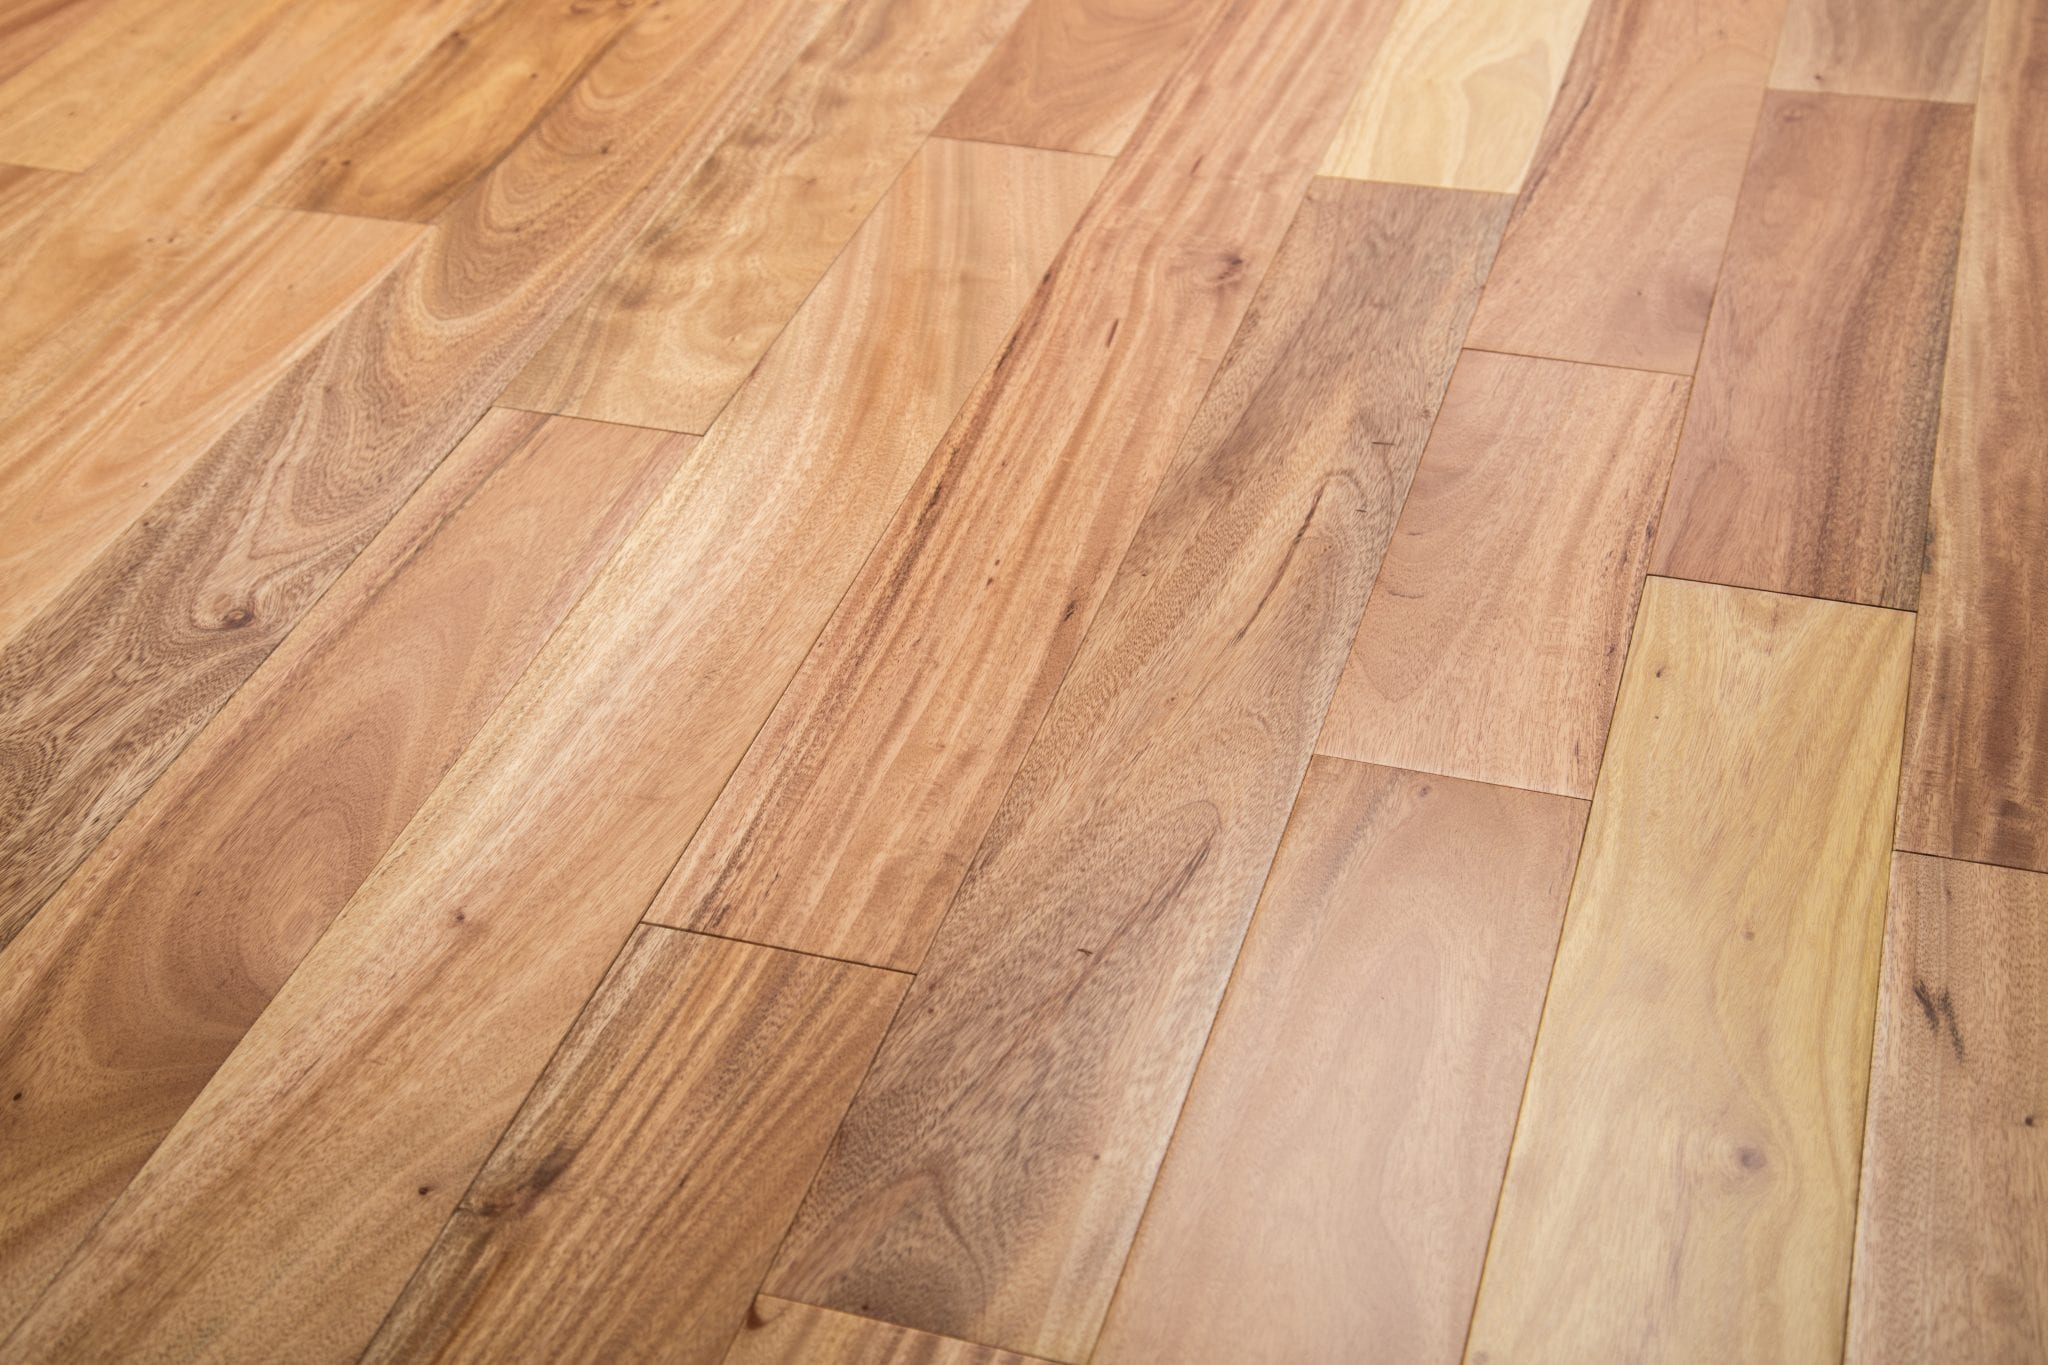 Solid Hardwood Flooring, Amendoim Engineered Hardwood Flooring